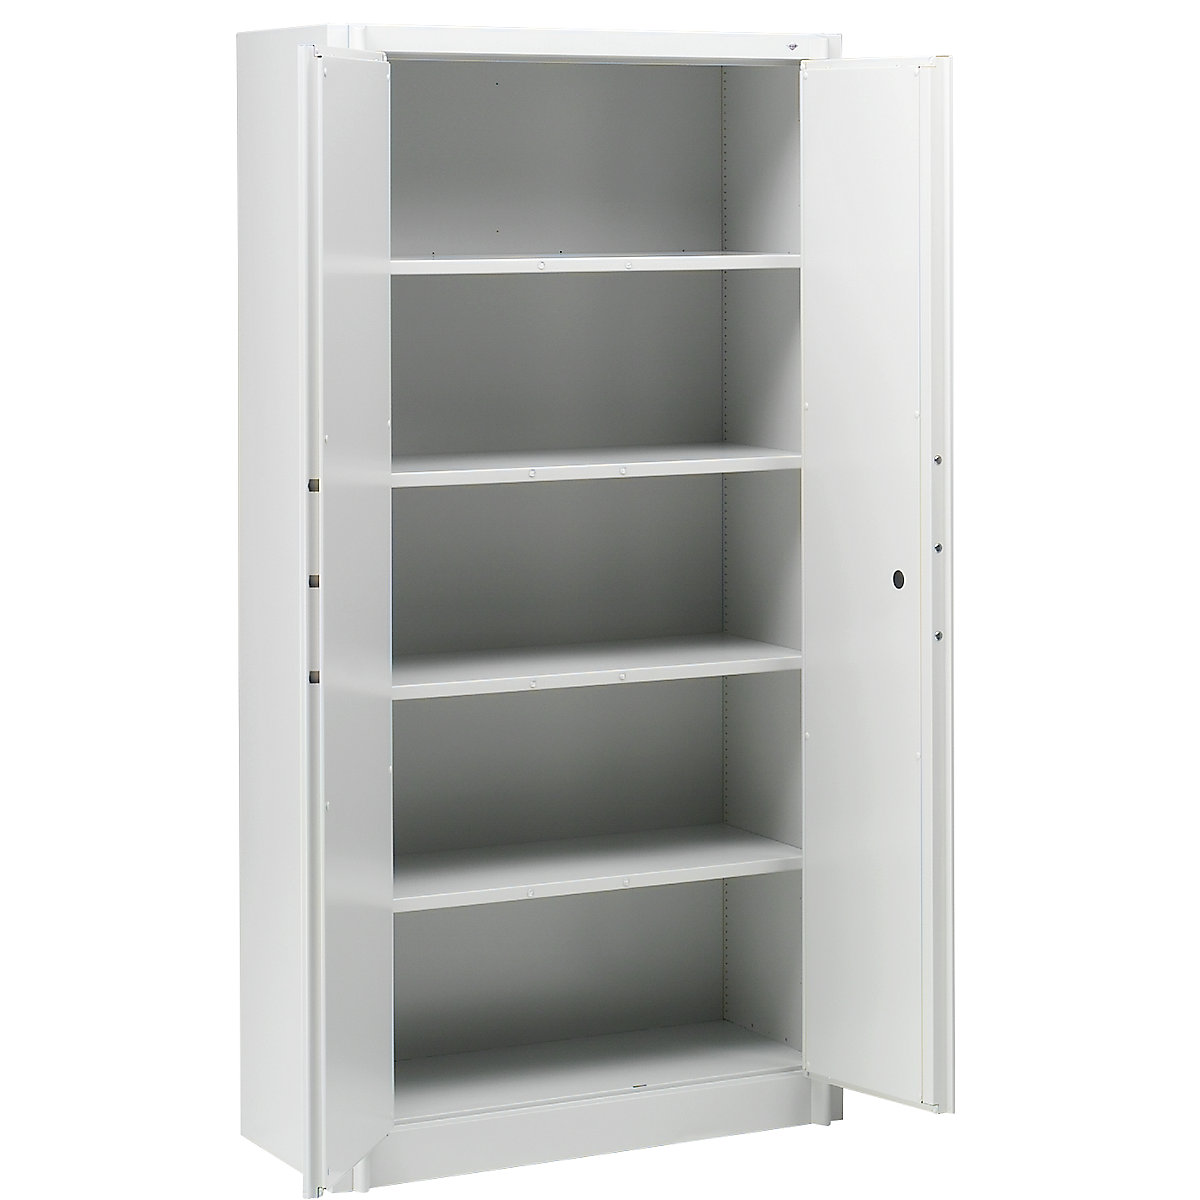 Steel cupboard, fireproof – C+P, DIN 4102 compliant, HxWxD 1950 x 930 x 500 mm, light grey-8